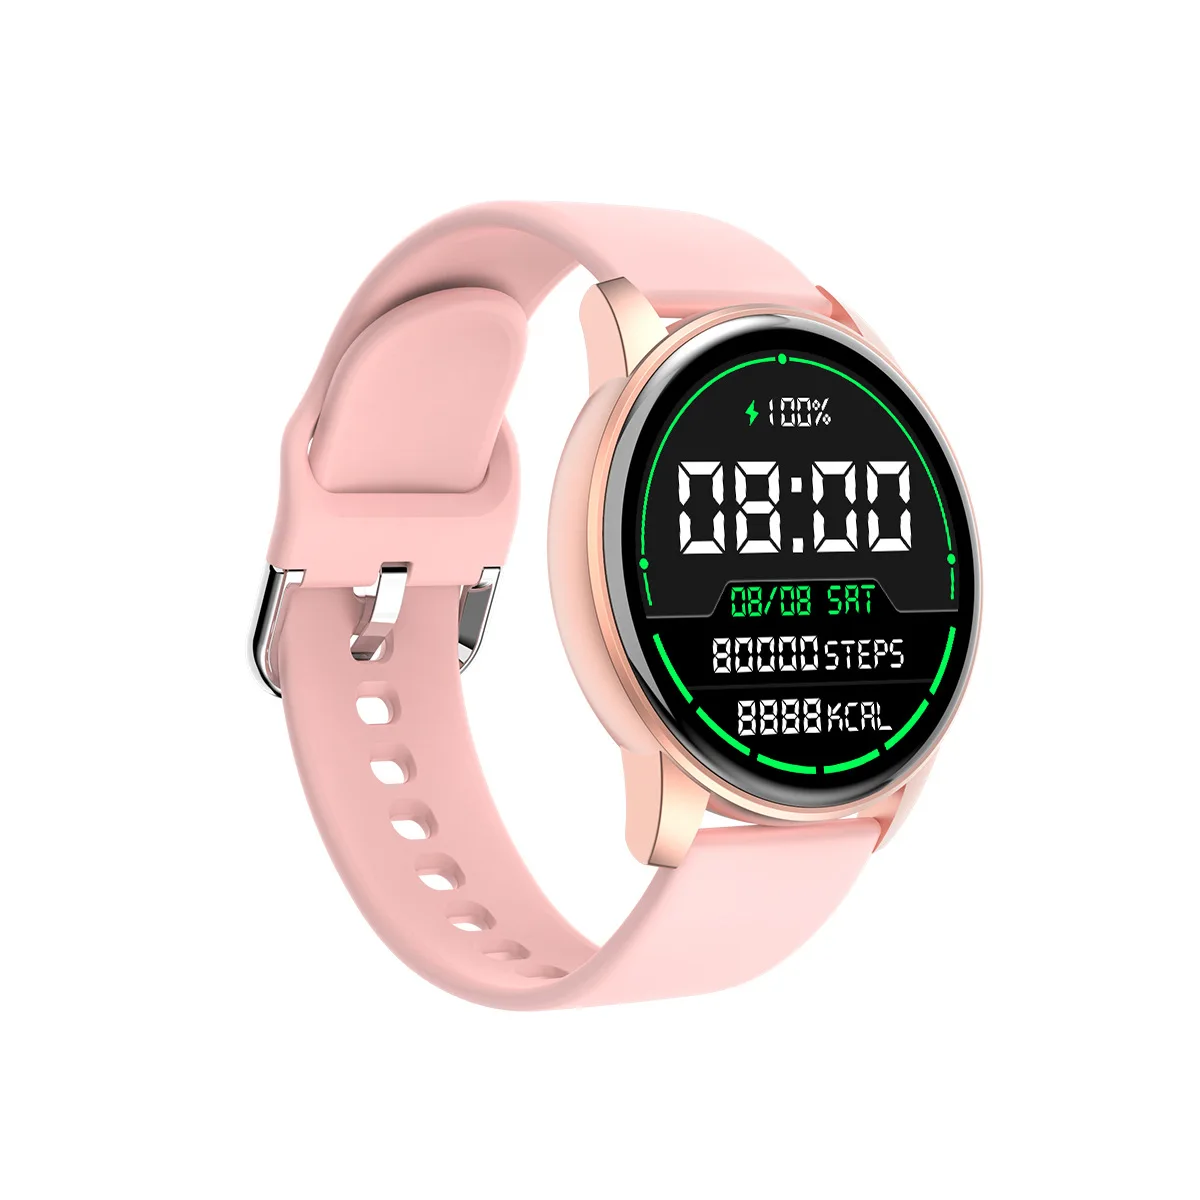 

inteligente esportivo smartwatch à prova d'água,com tela touch bluetoothmasculino fitness compatível com iOS e Android ip672021n